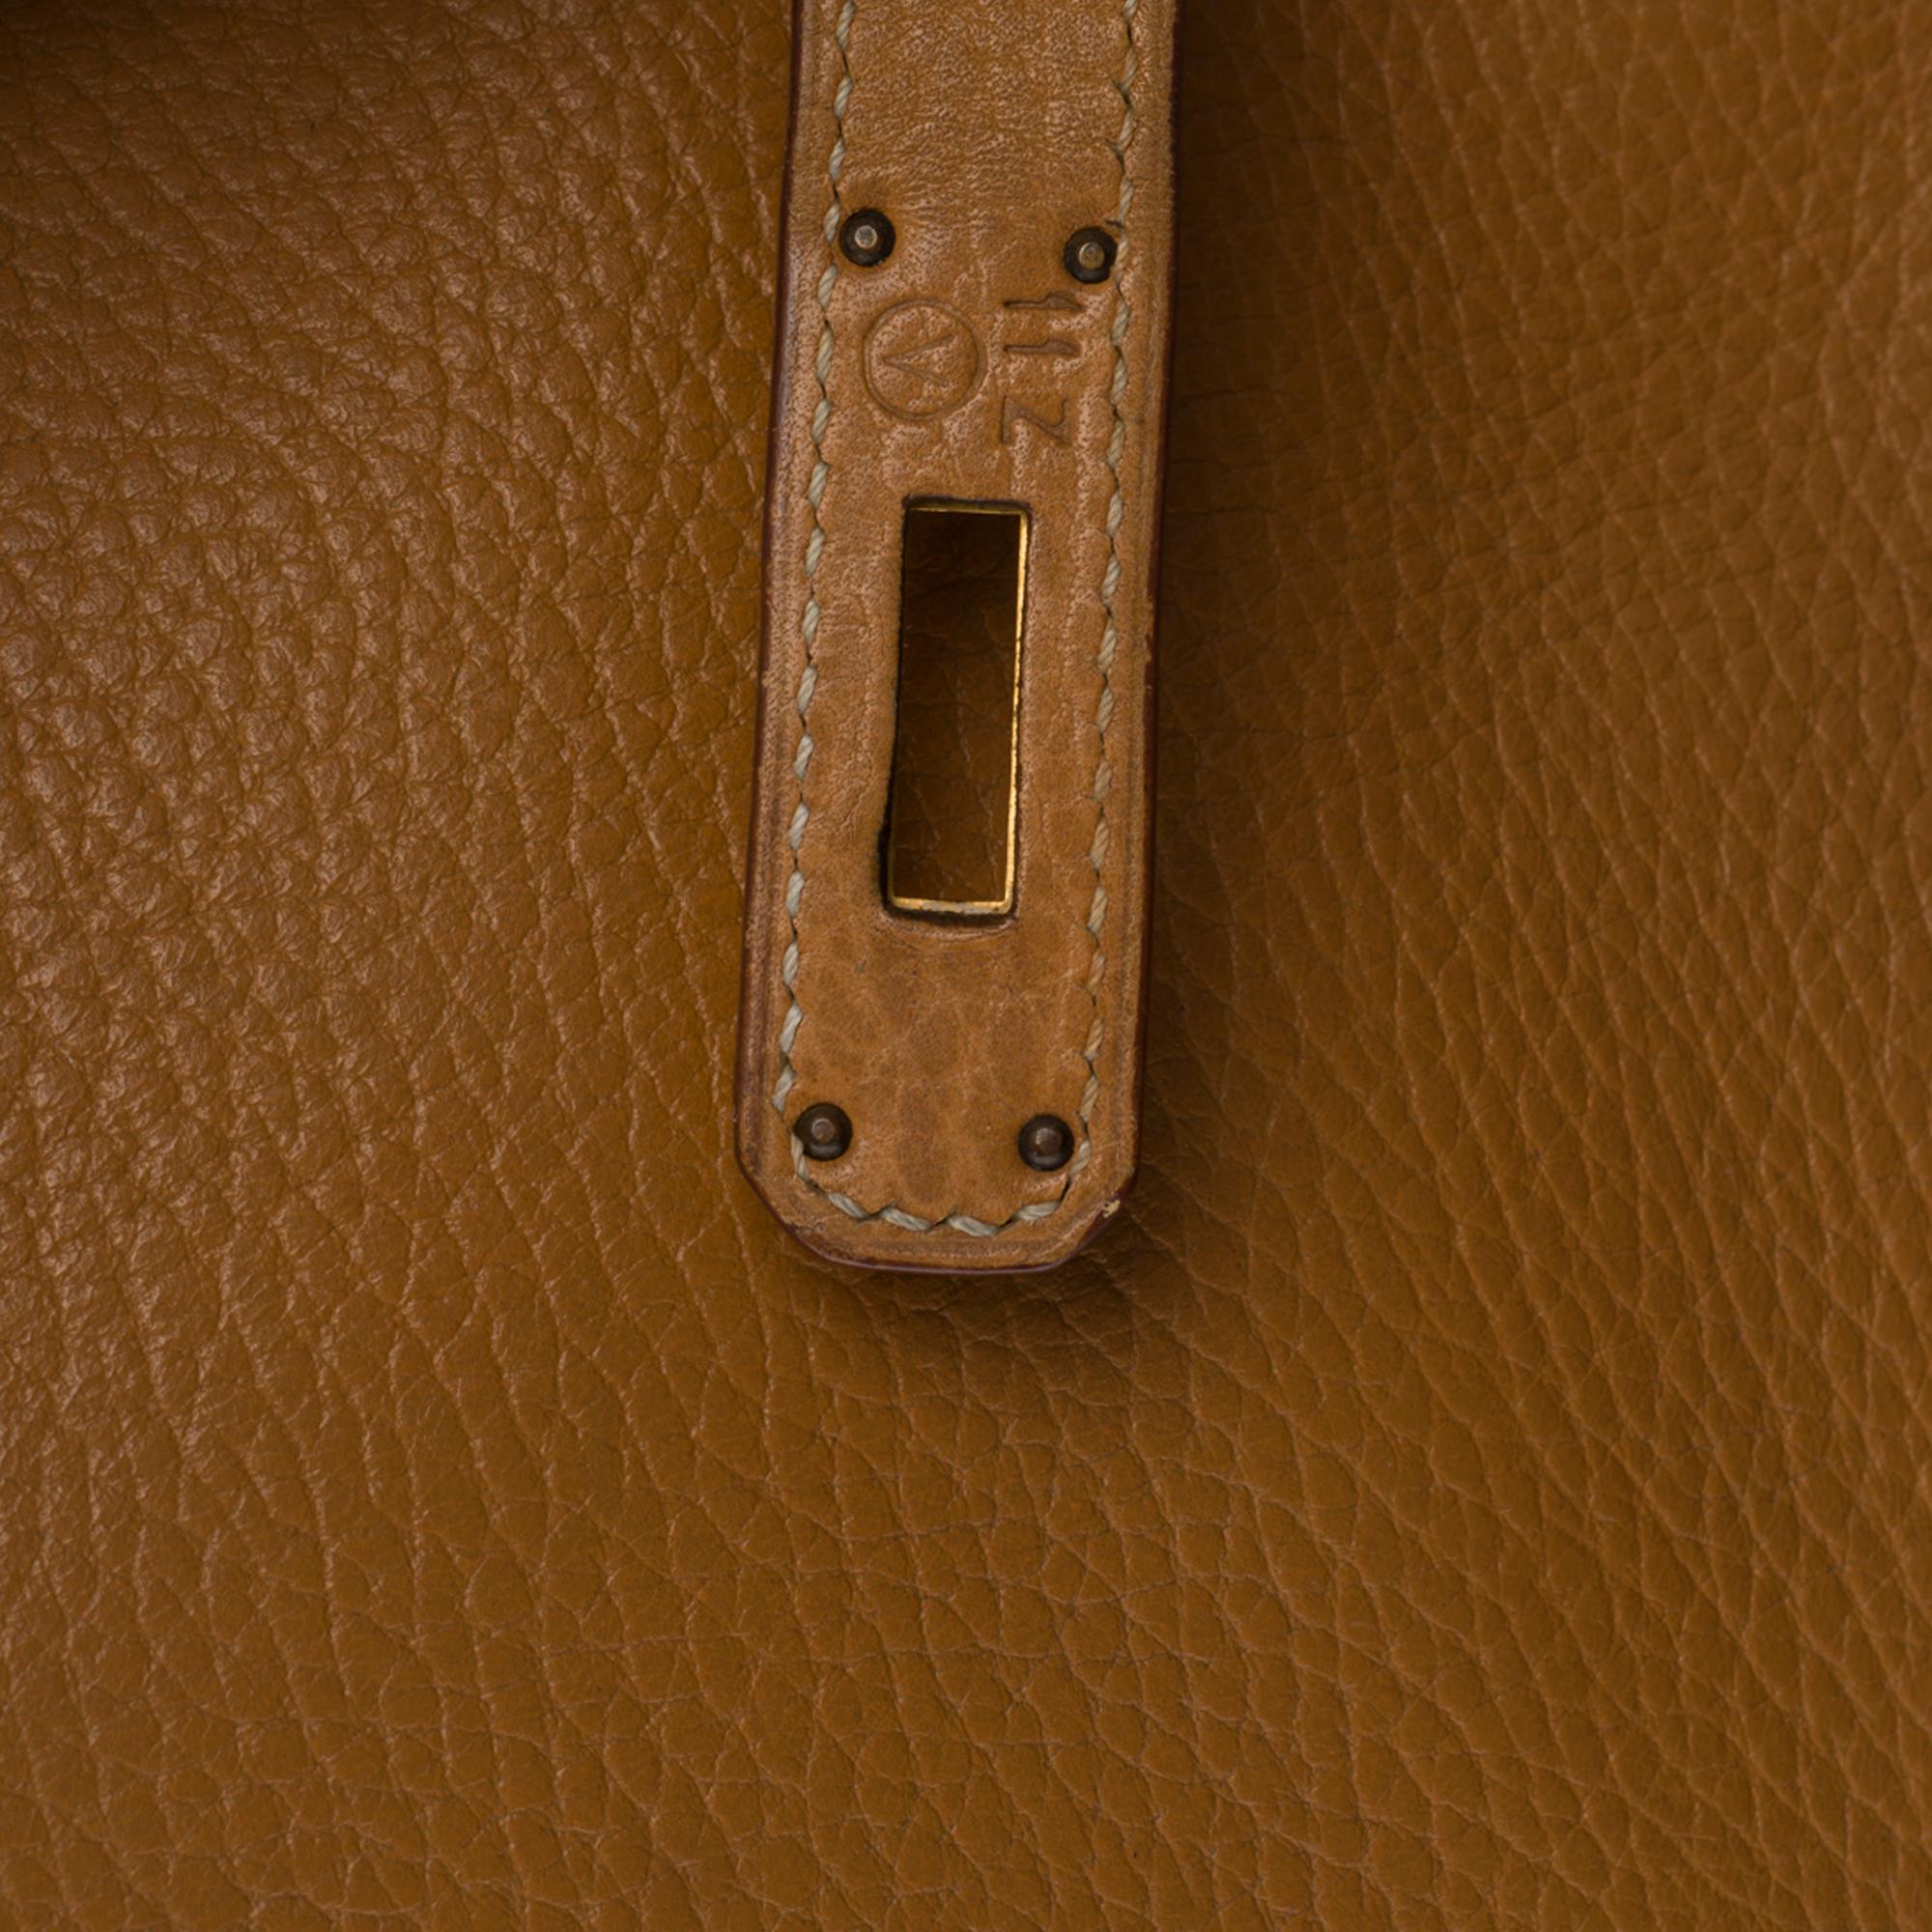 Stunning Hermes Birkin 40cm handbag in Gold Vache d'Ardenne leather, GHW 1